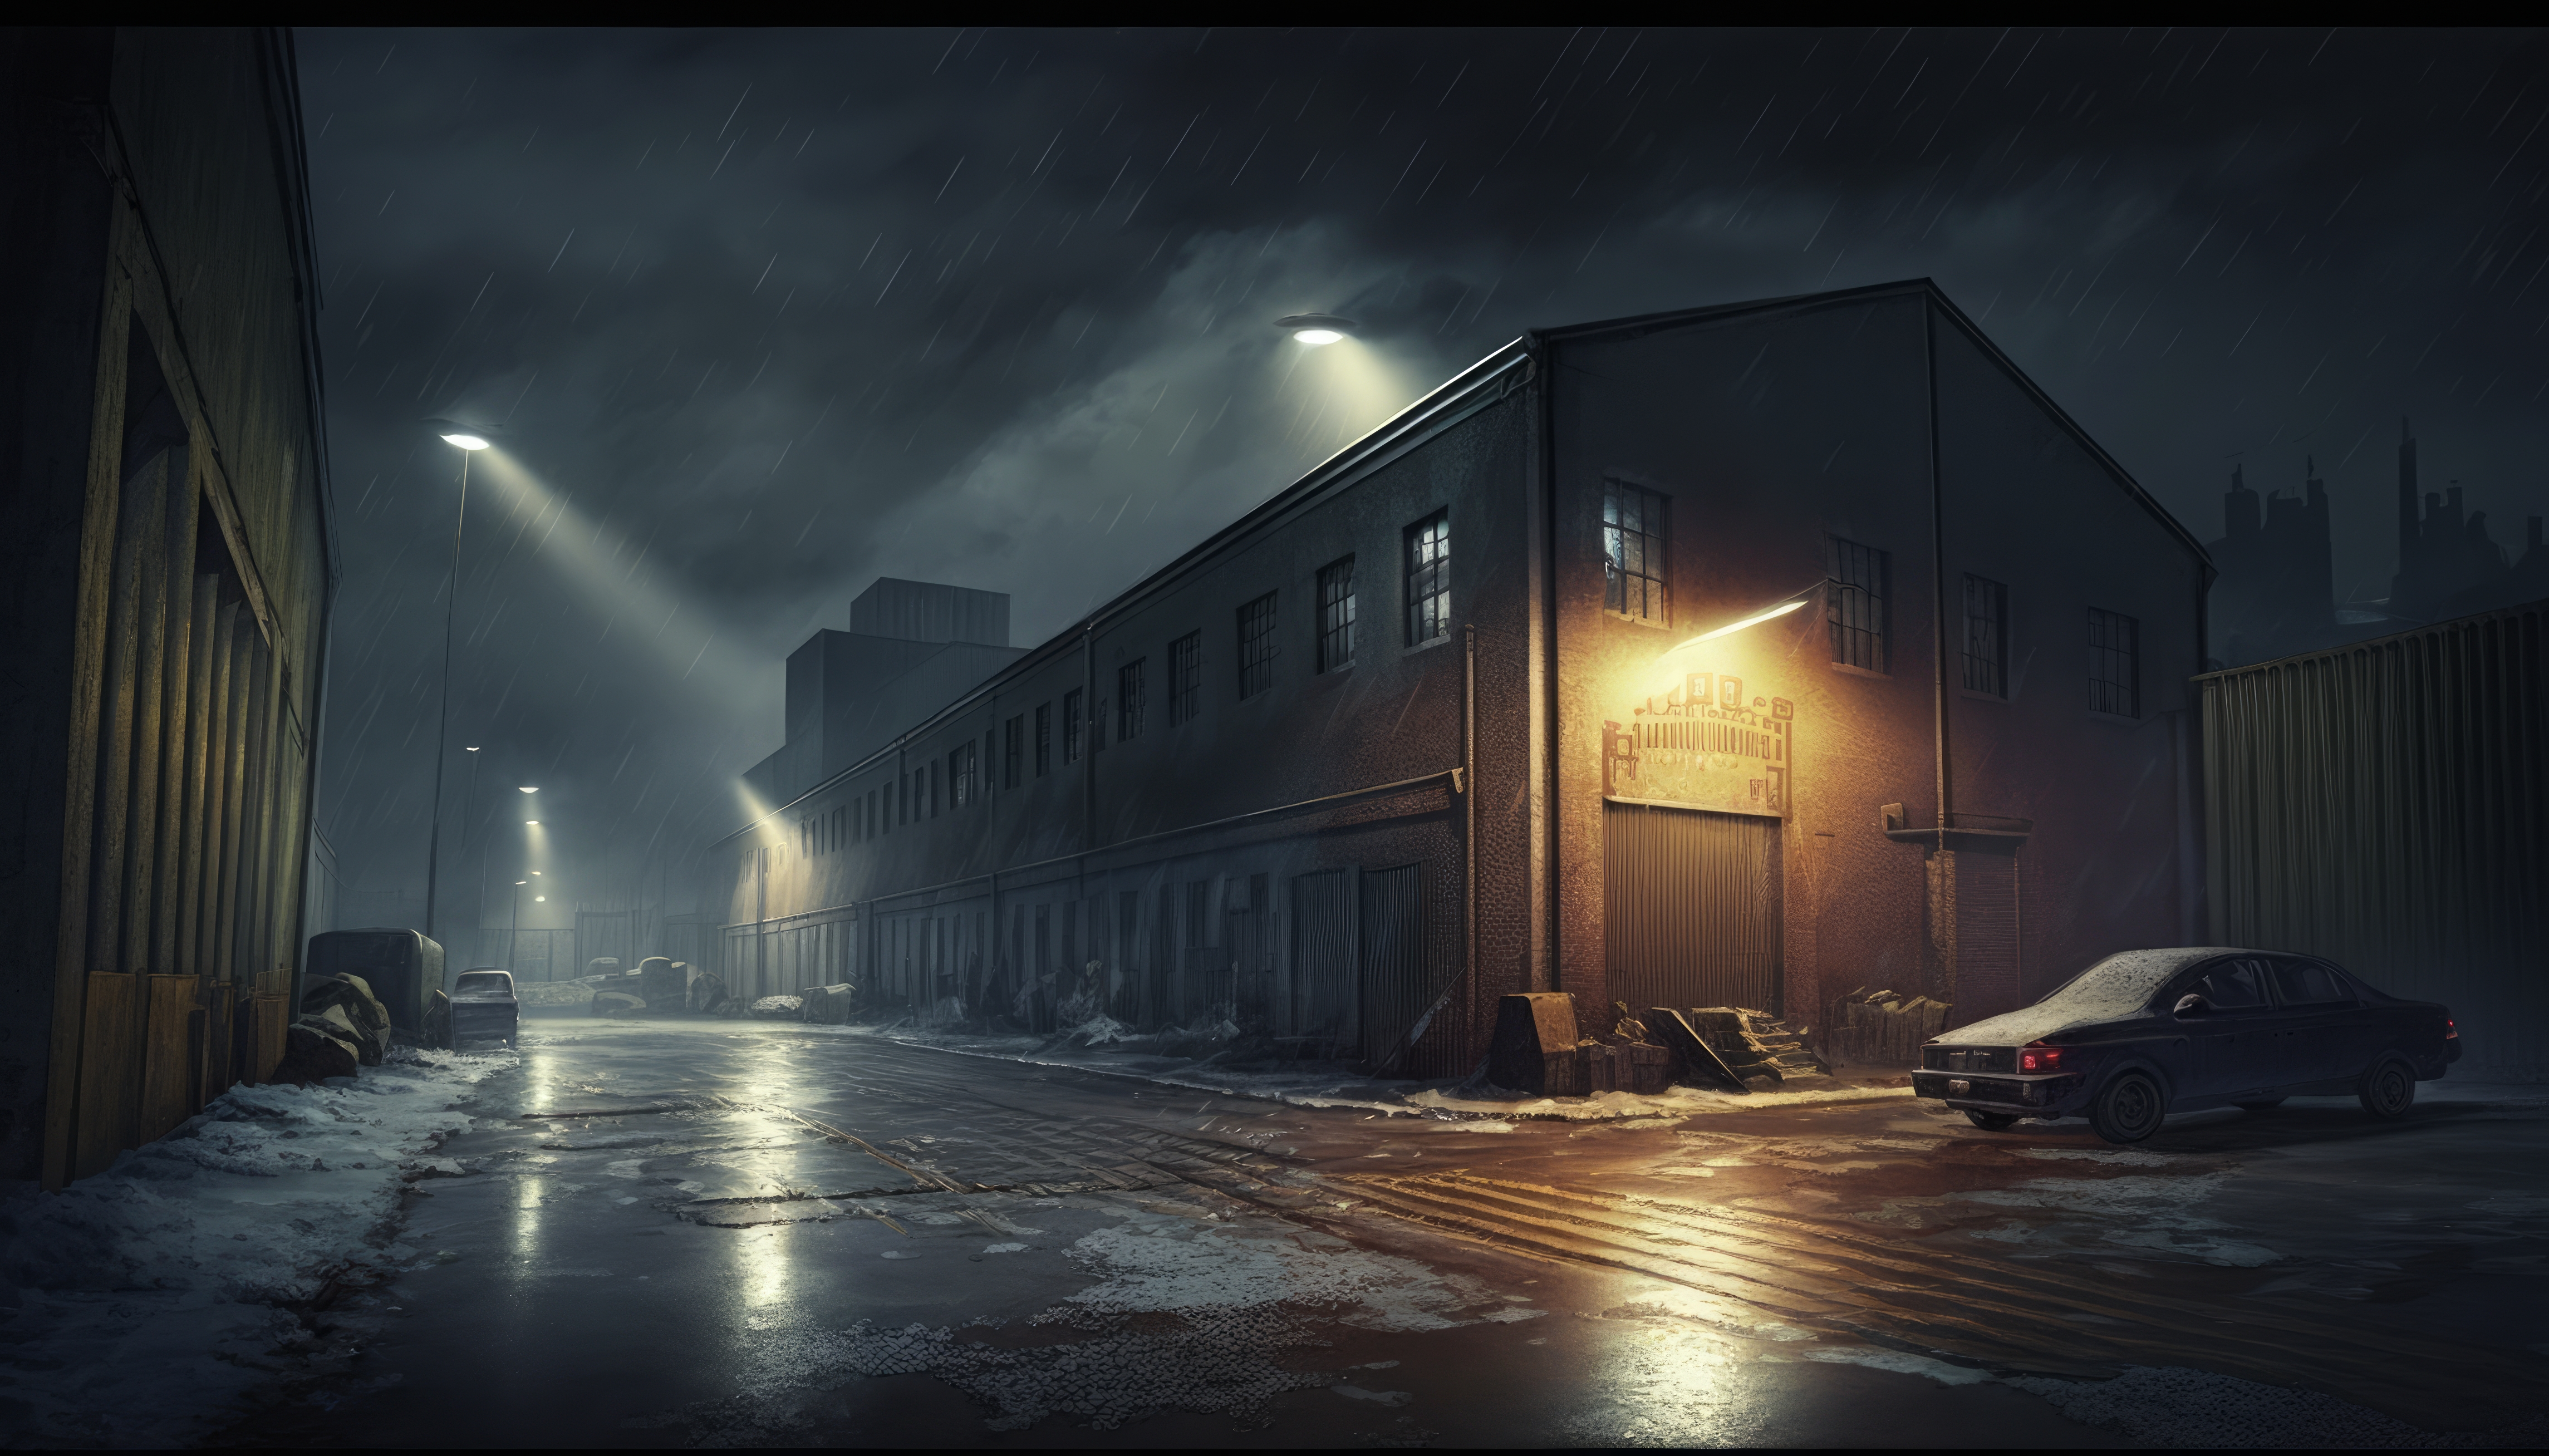 Ai Art Illustration City Warehouse Street Light Taillights Street Building Night Rain 4579x2616